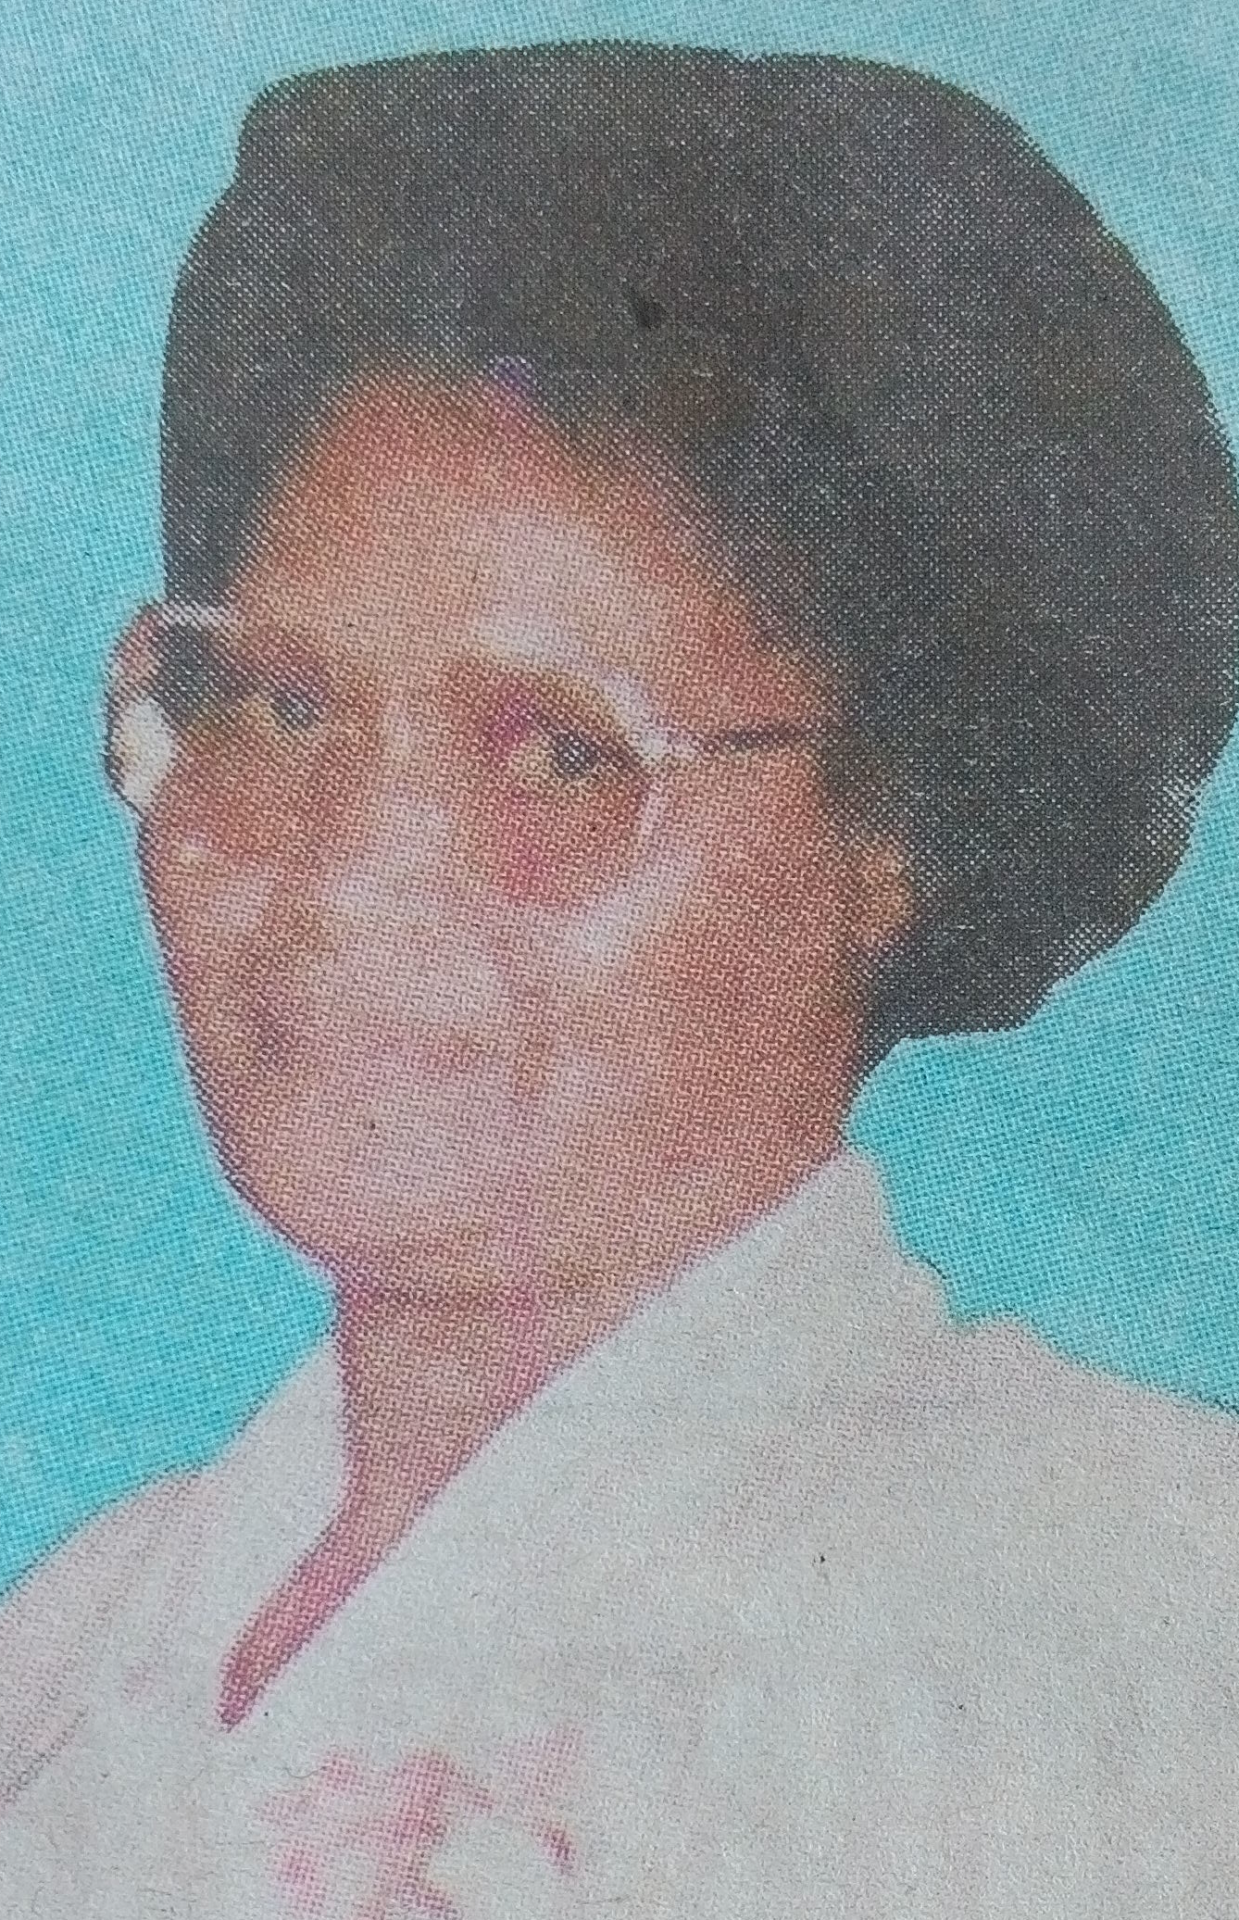 Obituary Image of Sara Wanjiru Wambugu